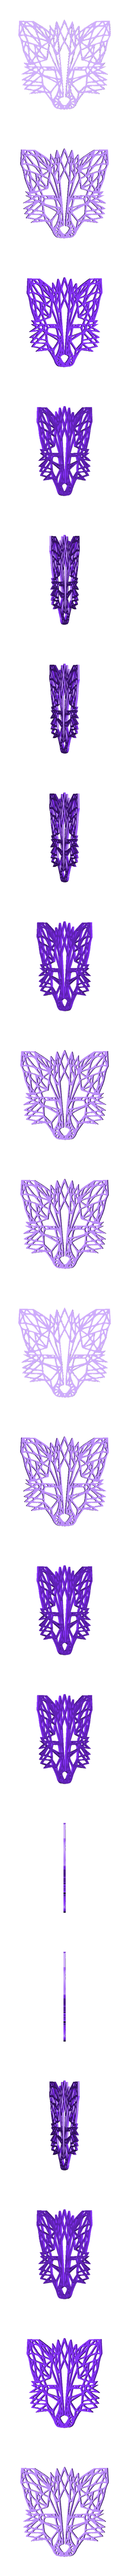 Fox geometric wall art.stl Télécharger fichier STL gratuit Renard géométrique (v2) • Modèle à imprimer en 3D, RaimonLab